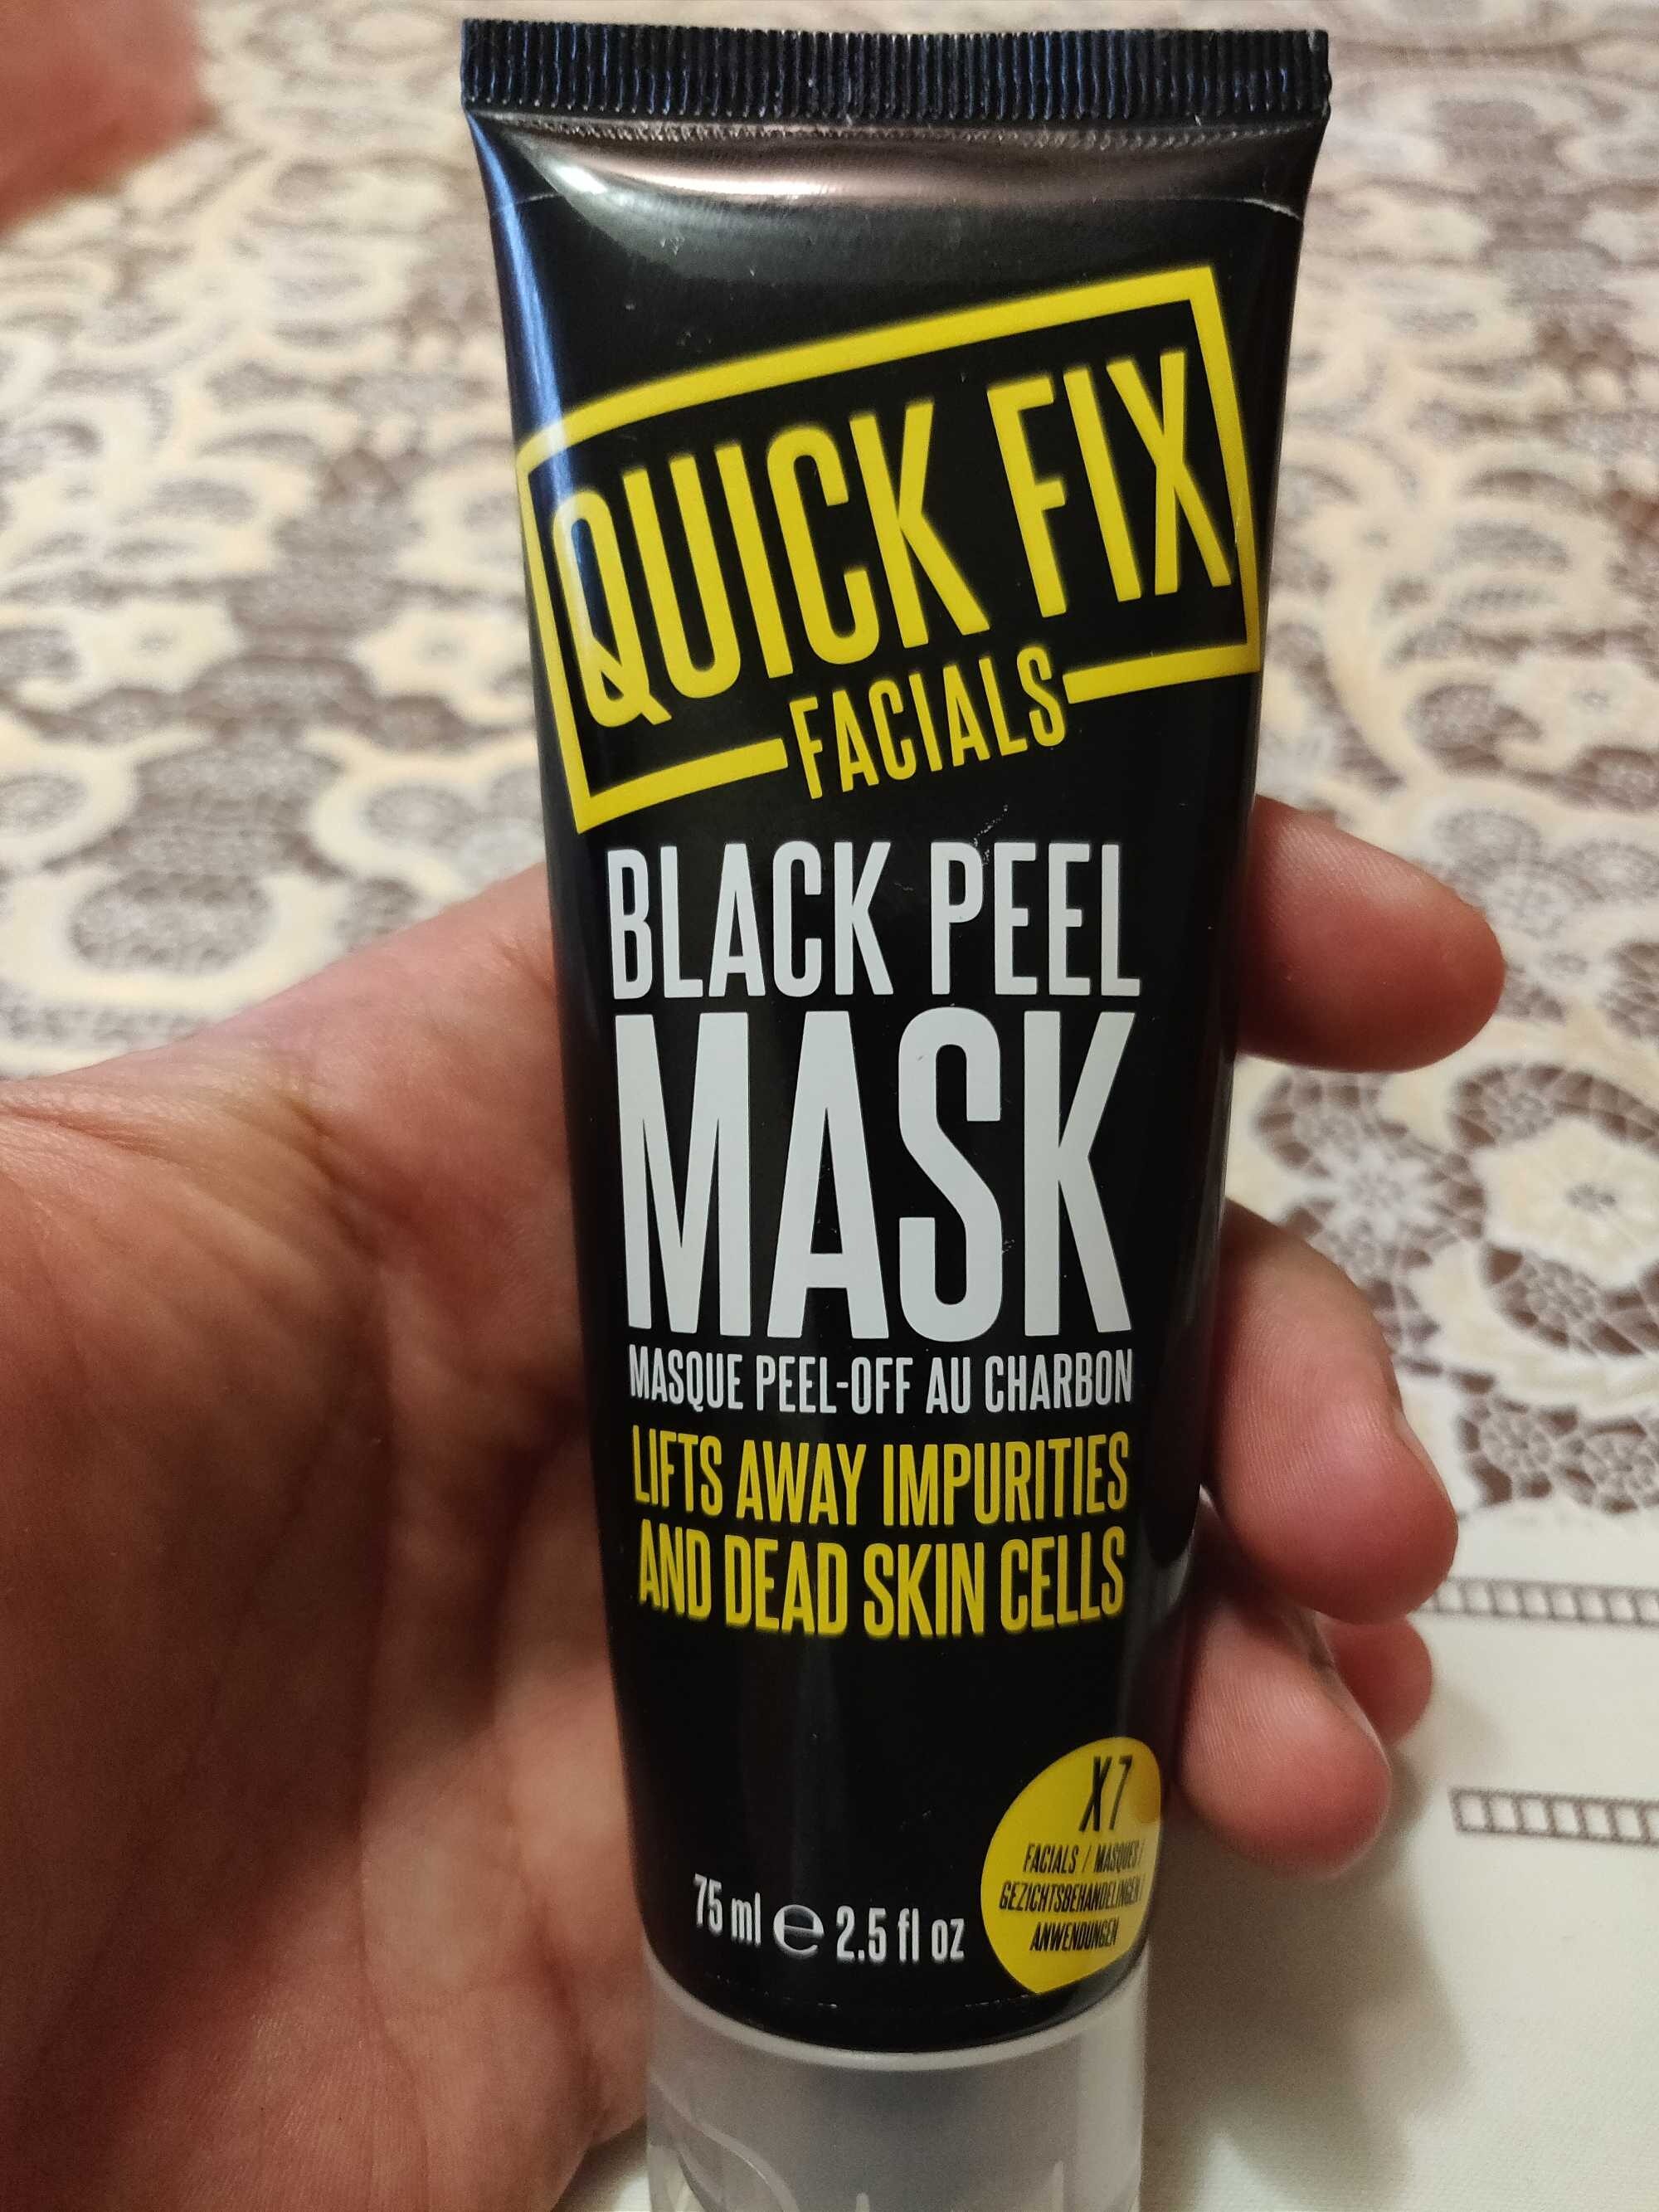 Black Peel Mask - Product - en